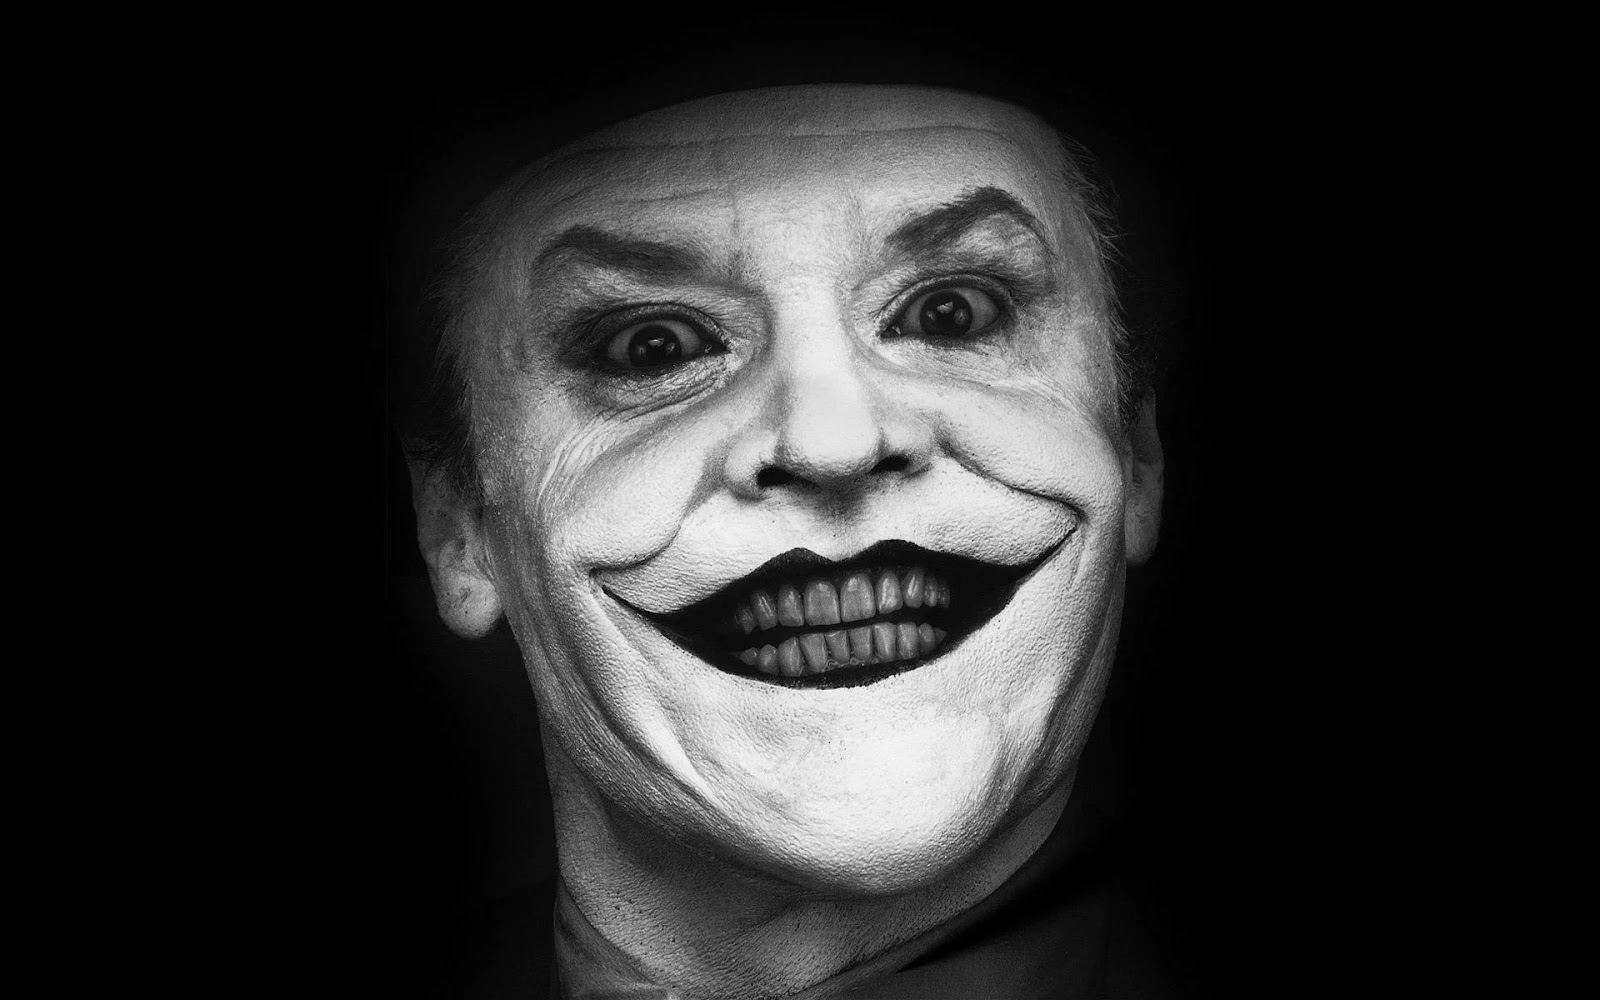 Jack Nicholson como el Joker, sonriendo de manera macabra en una imagen en blanco y negro. Se ve su rostro de cerca y el fondo negro